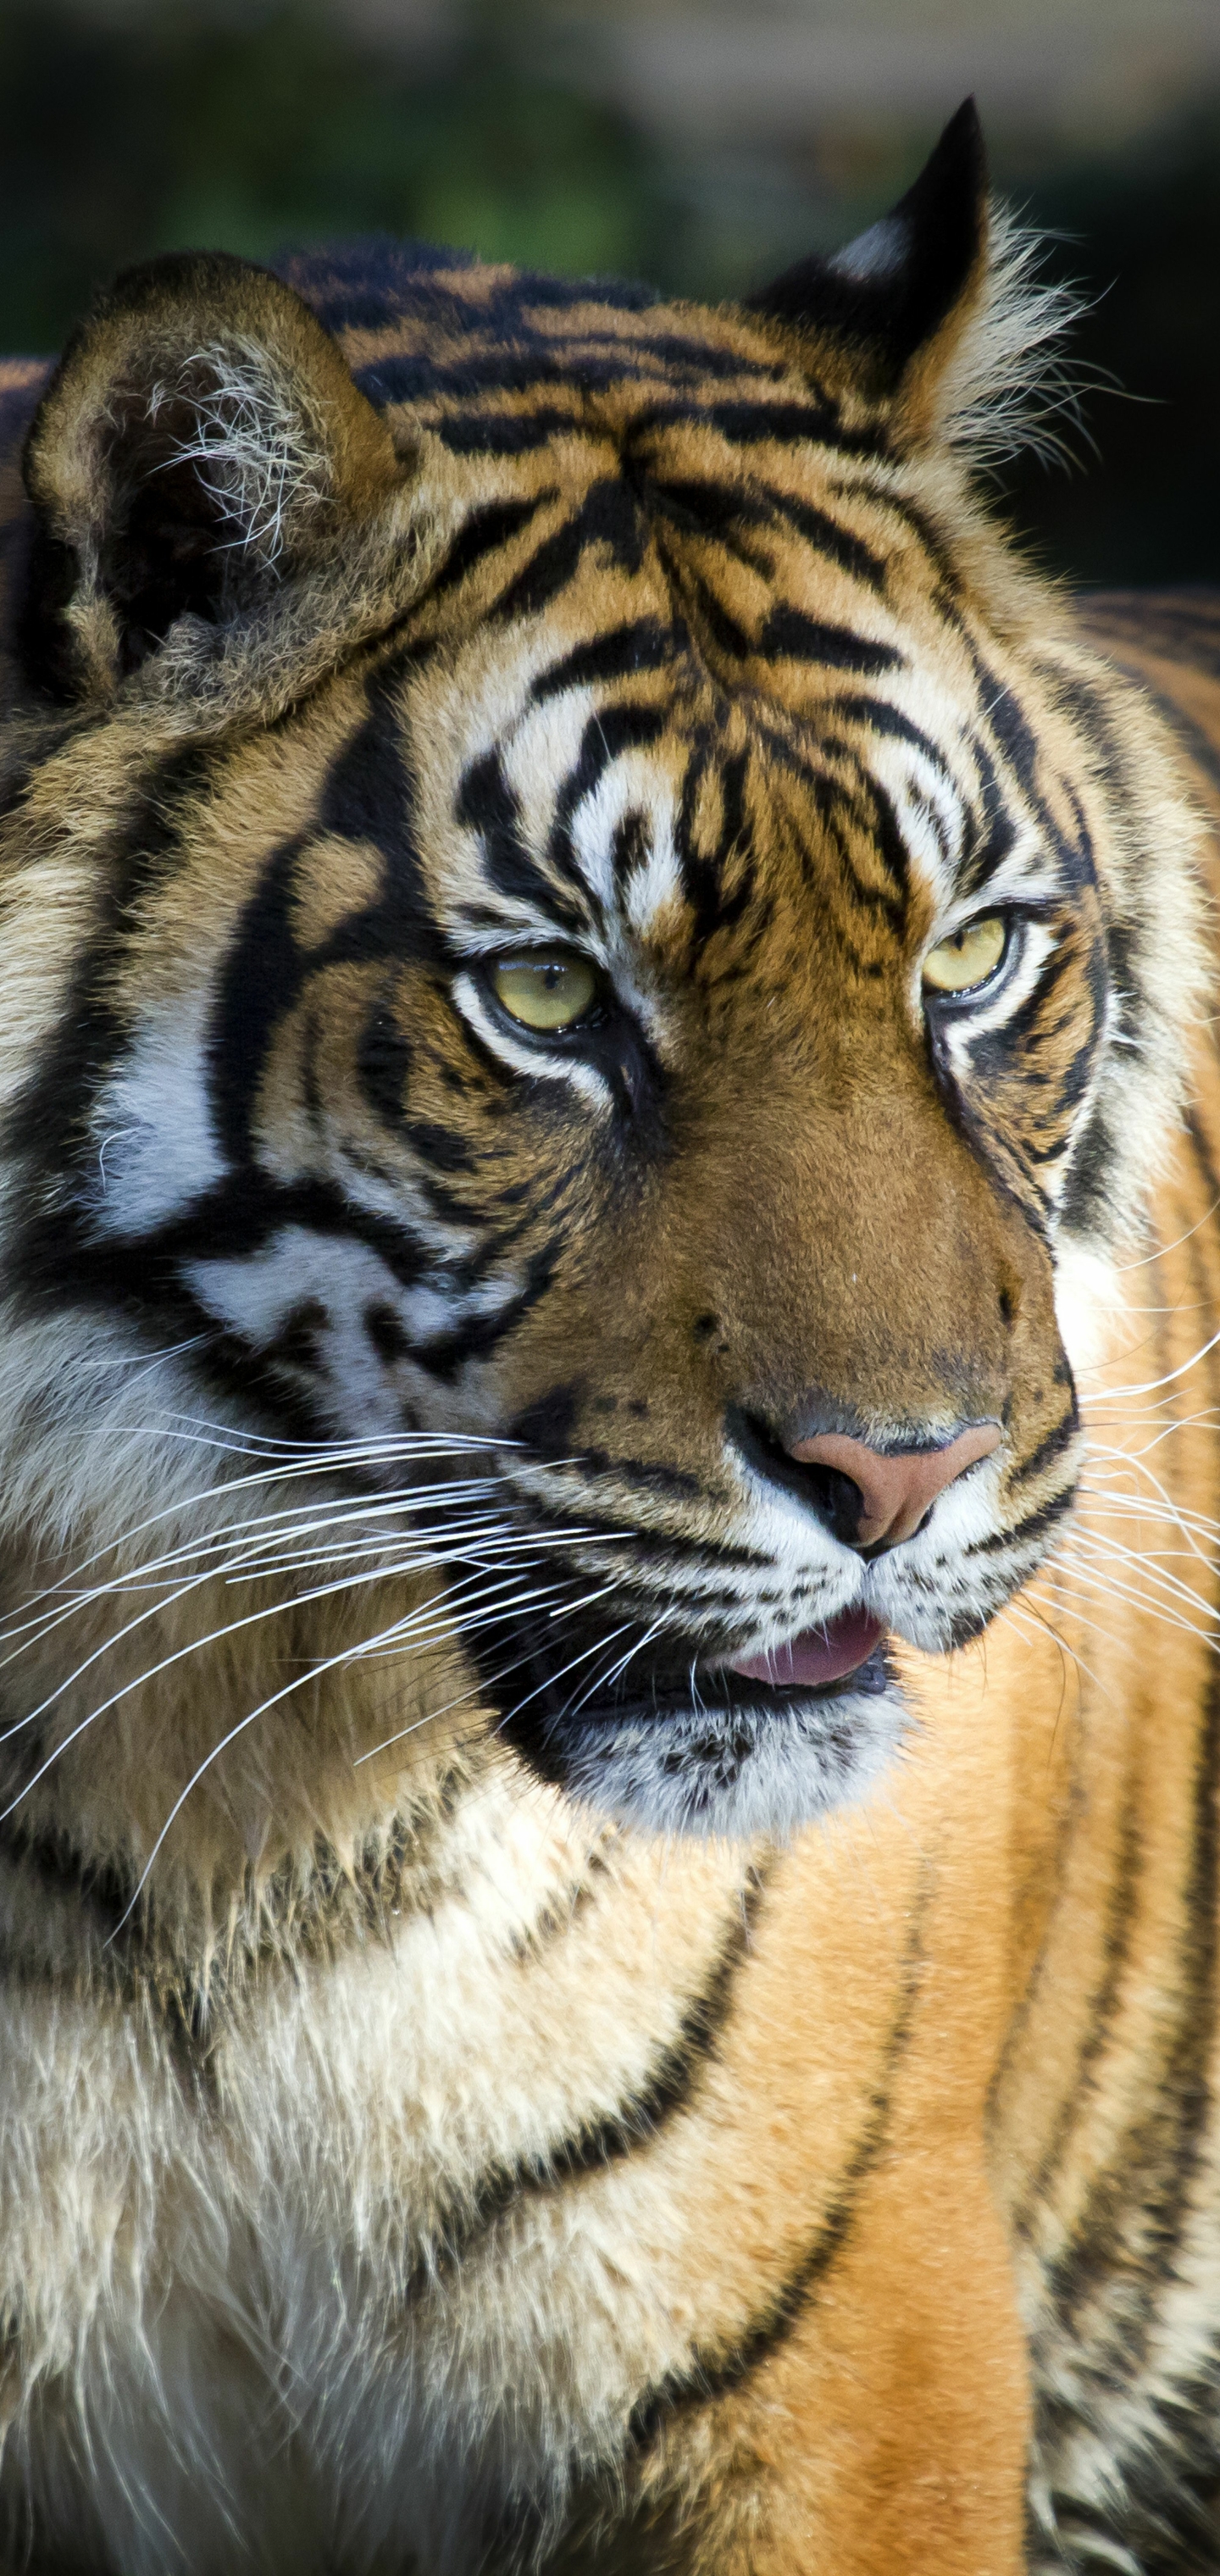 bengal tiger closep